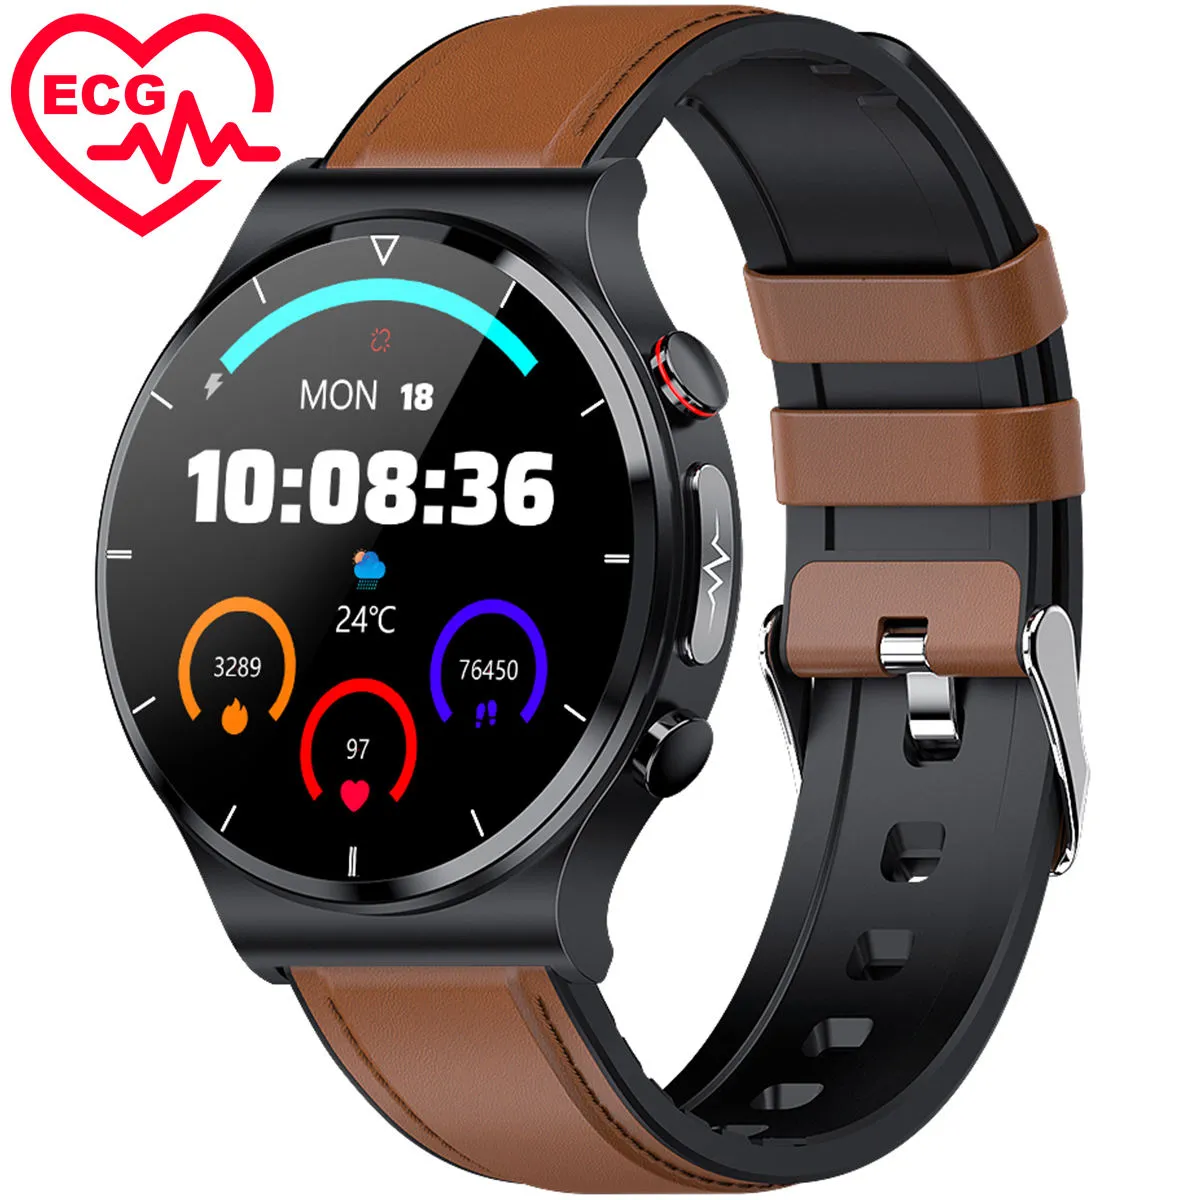 ECG Health Smartwatch E88